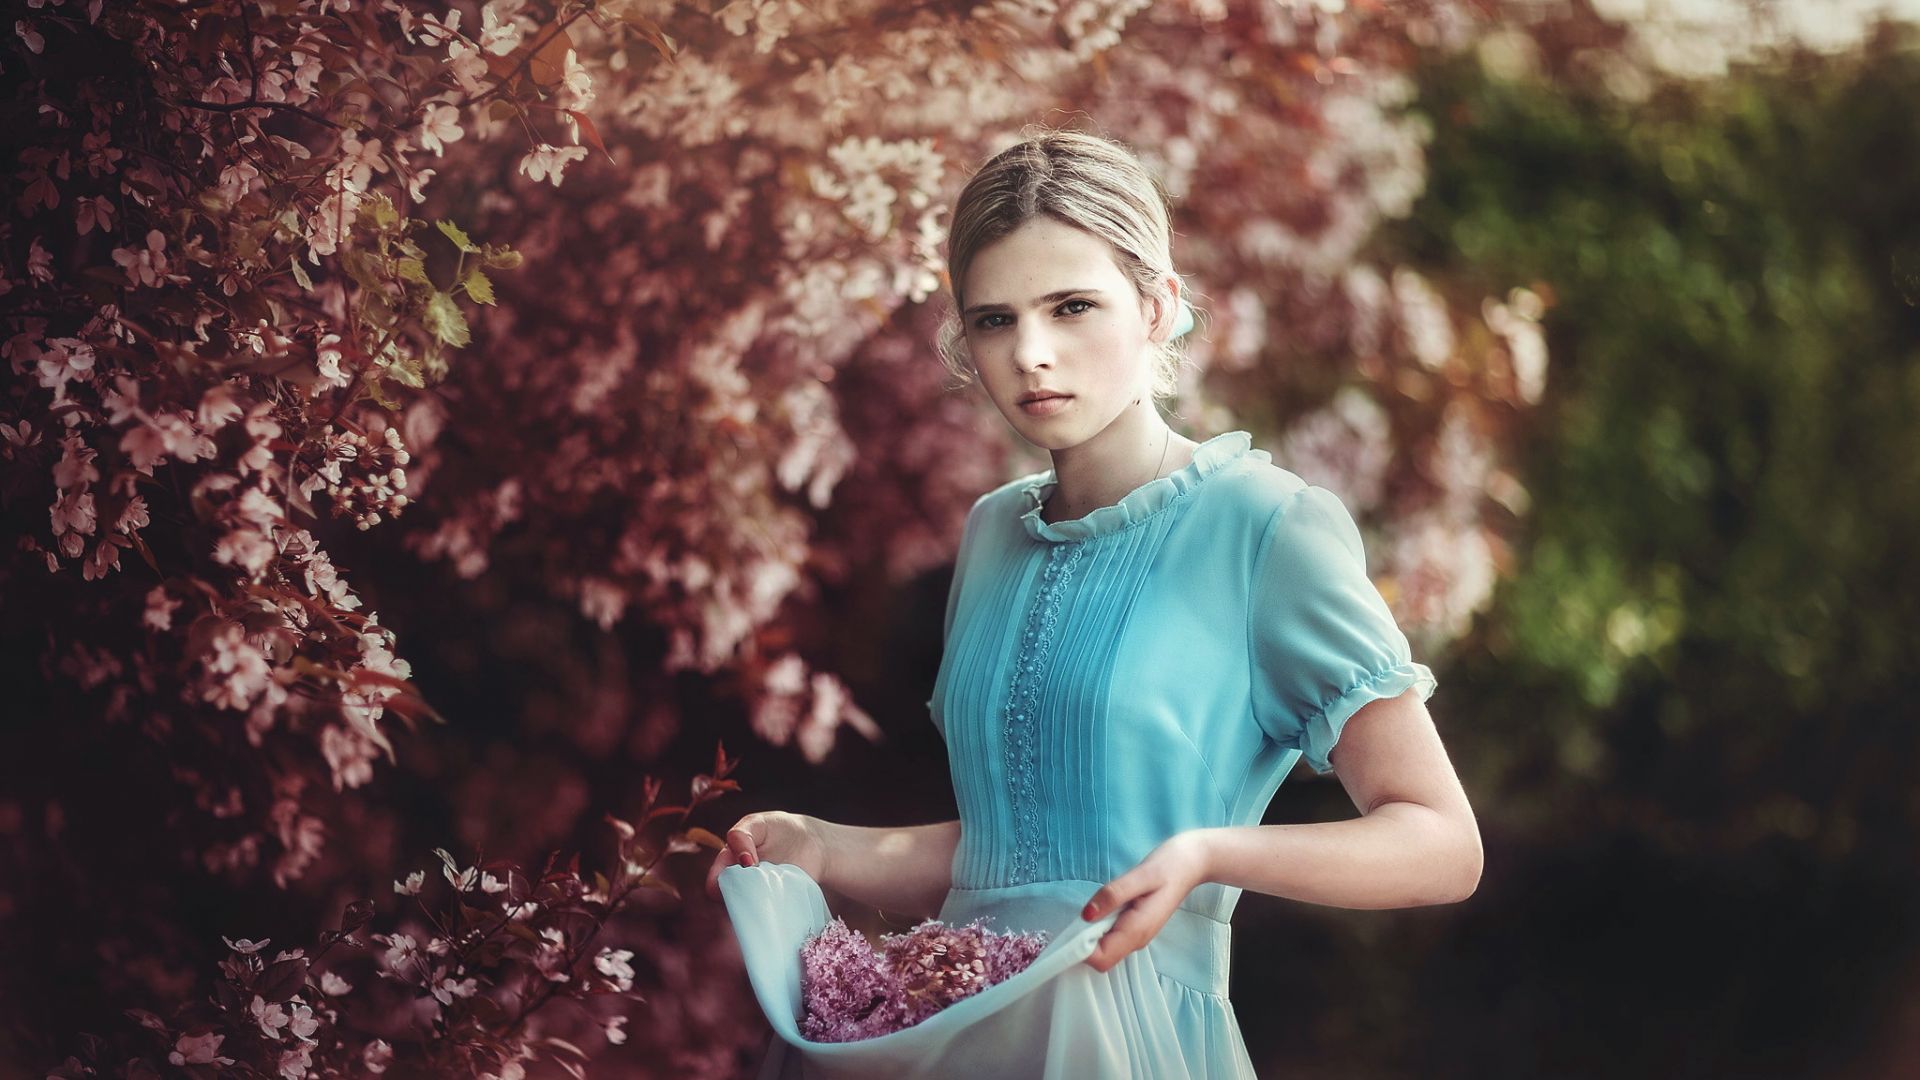 Wallpaper Flowers, blossom, blue dress, girl model, outdoor